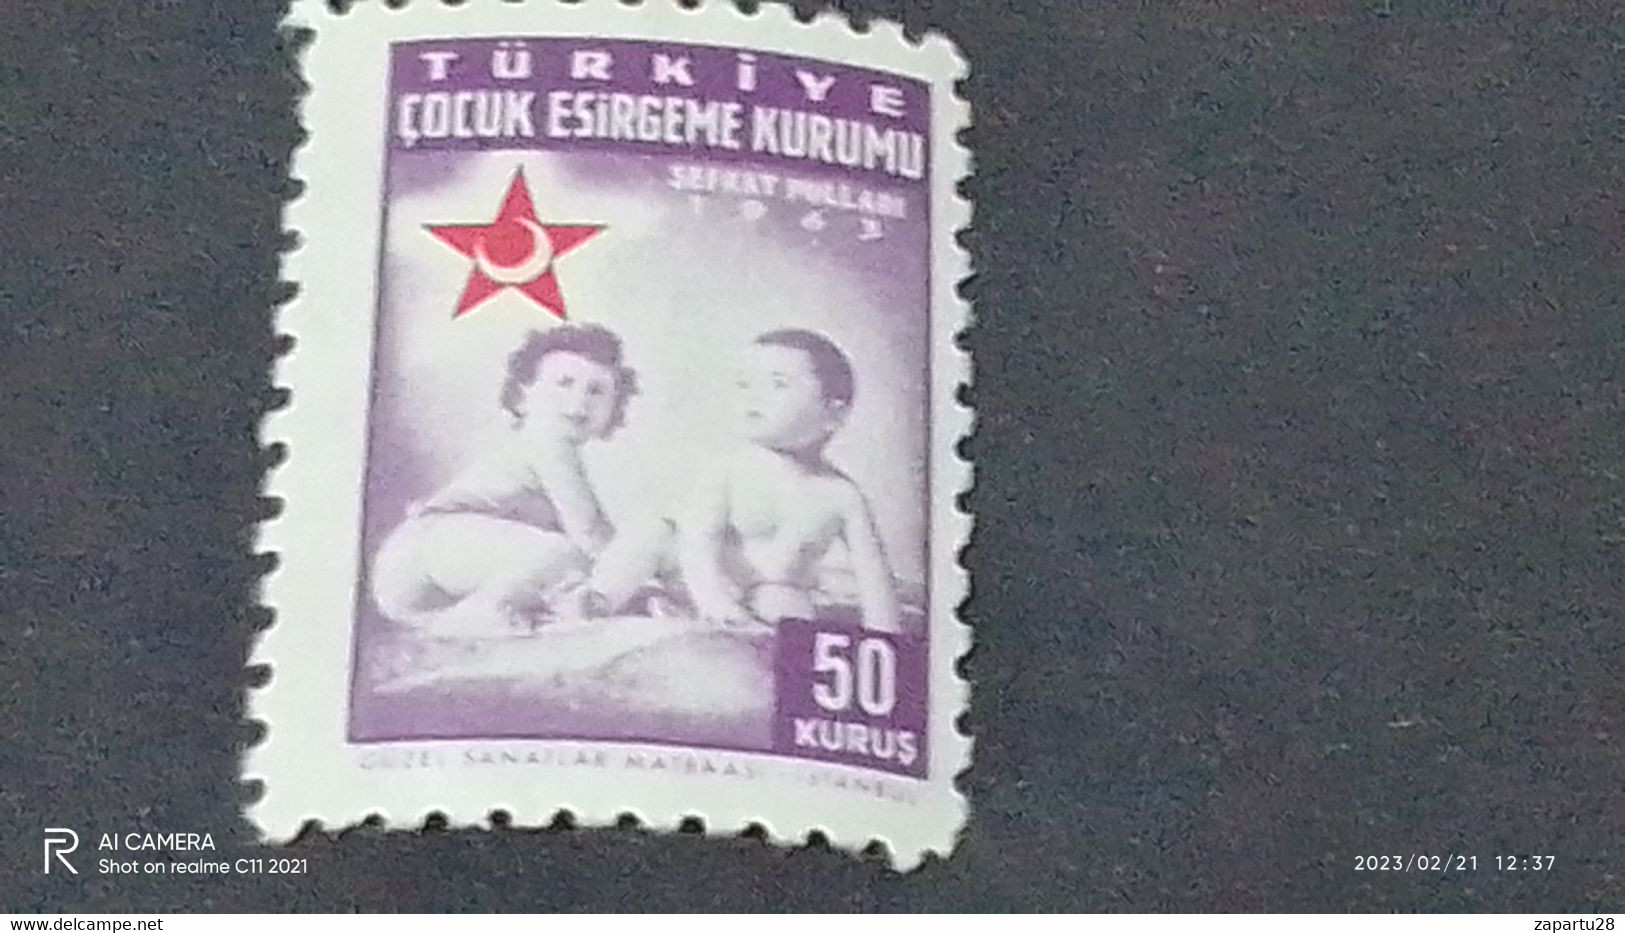 TÜRKEY--YARDIM PULLARI- 1950-60   ÇOCUK ESİRGEME 50K  DAMGASIZ - Francobolli Di Beneficenza